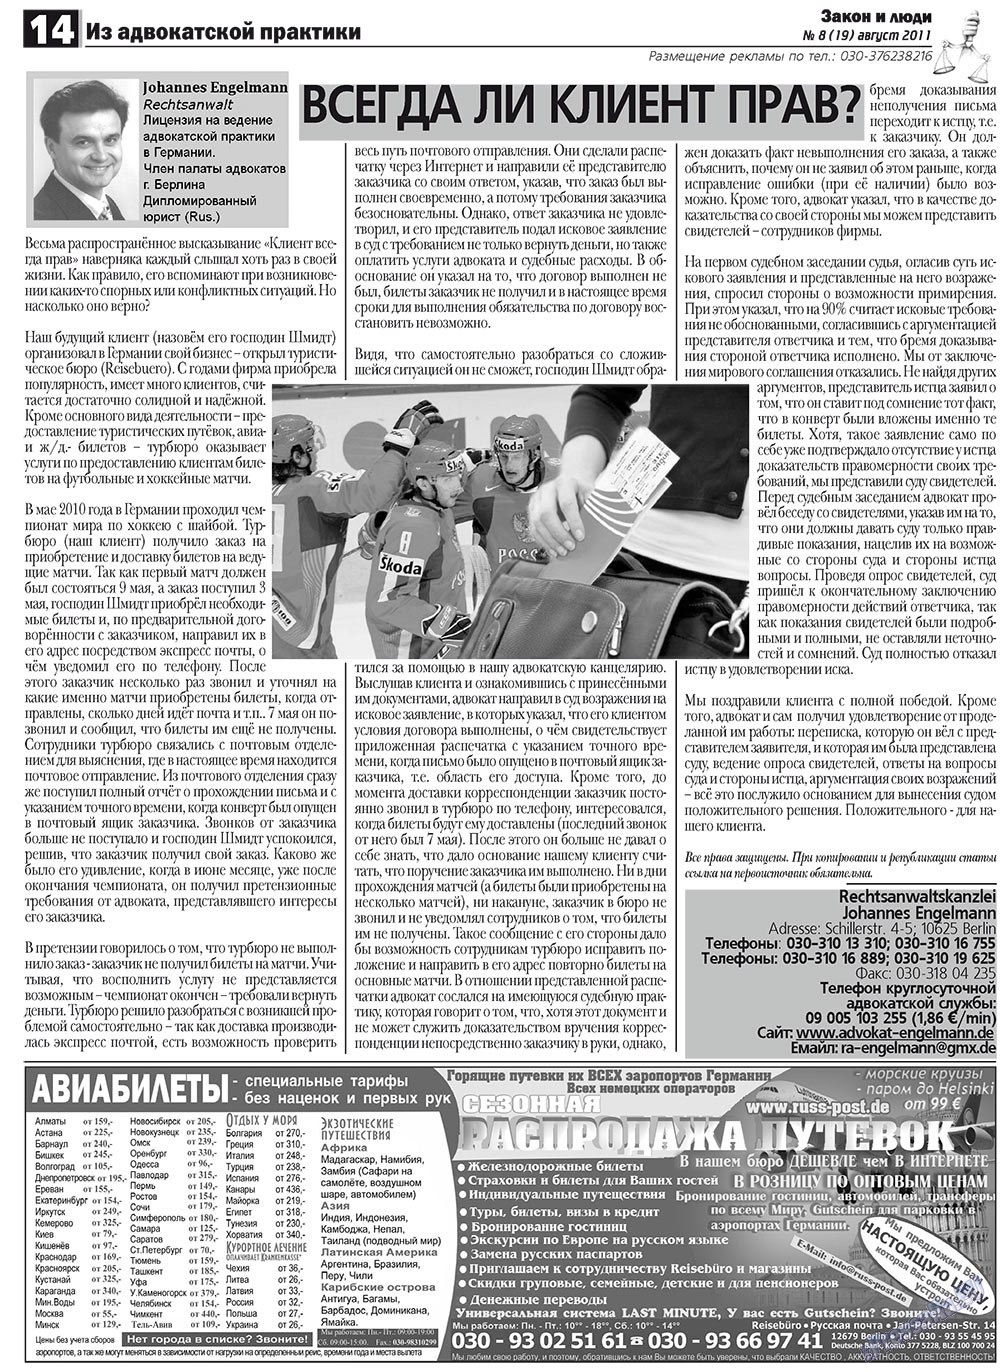 Закон и люди (газета). 2011 год, номер 8, стр. 14